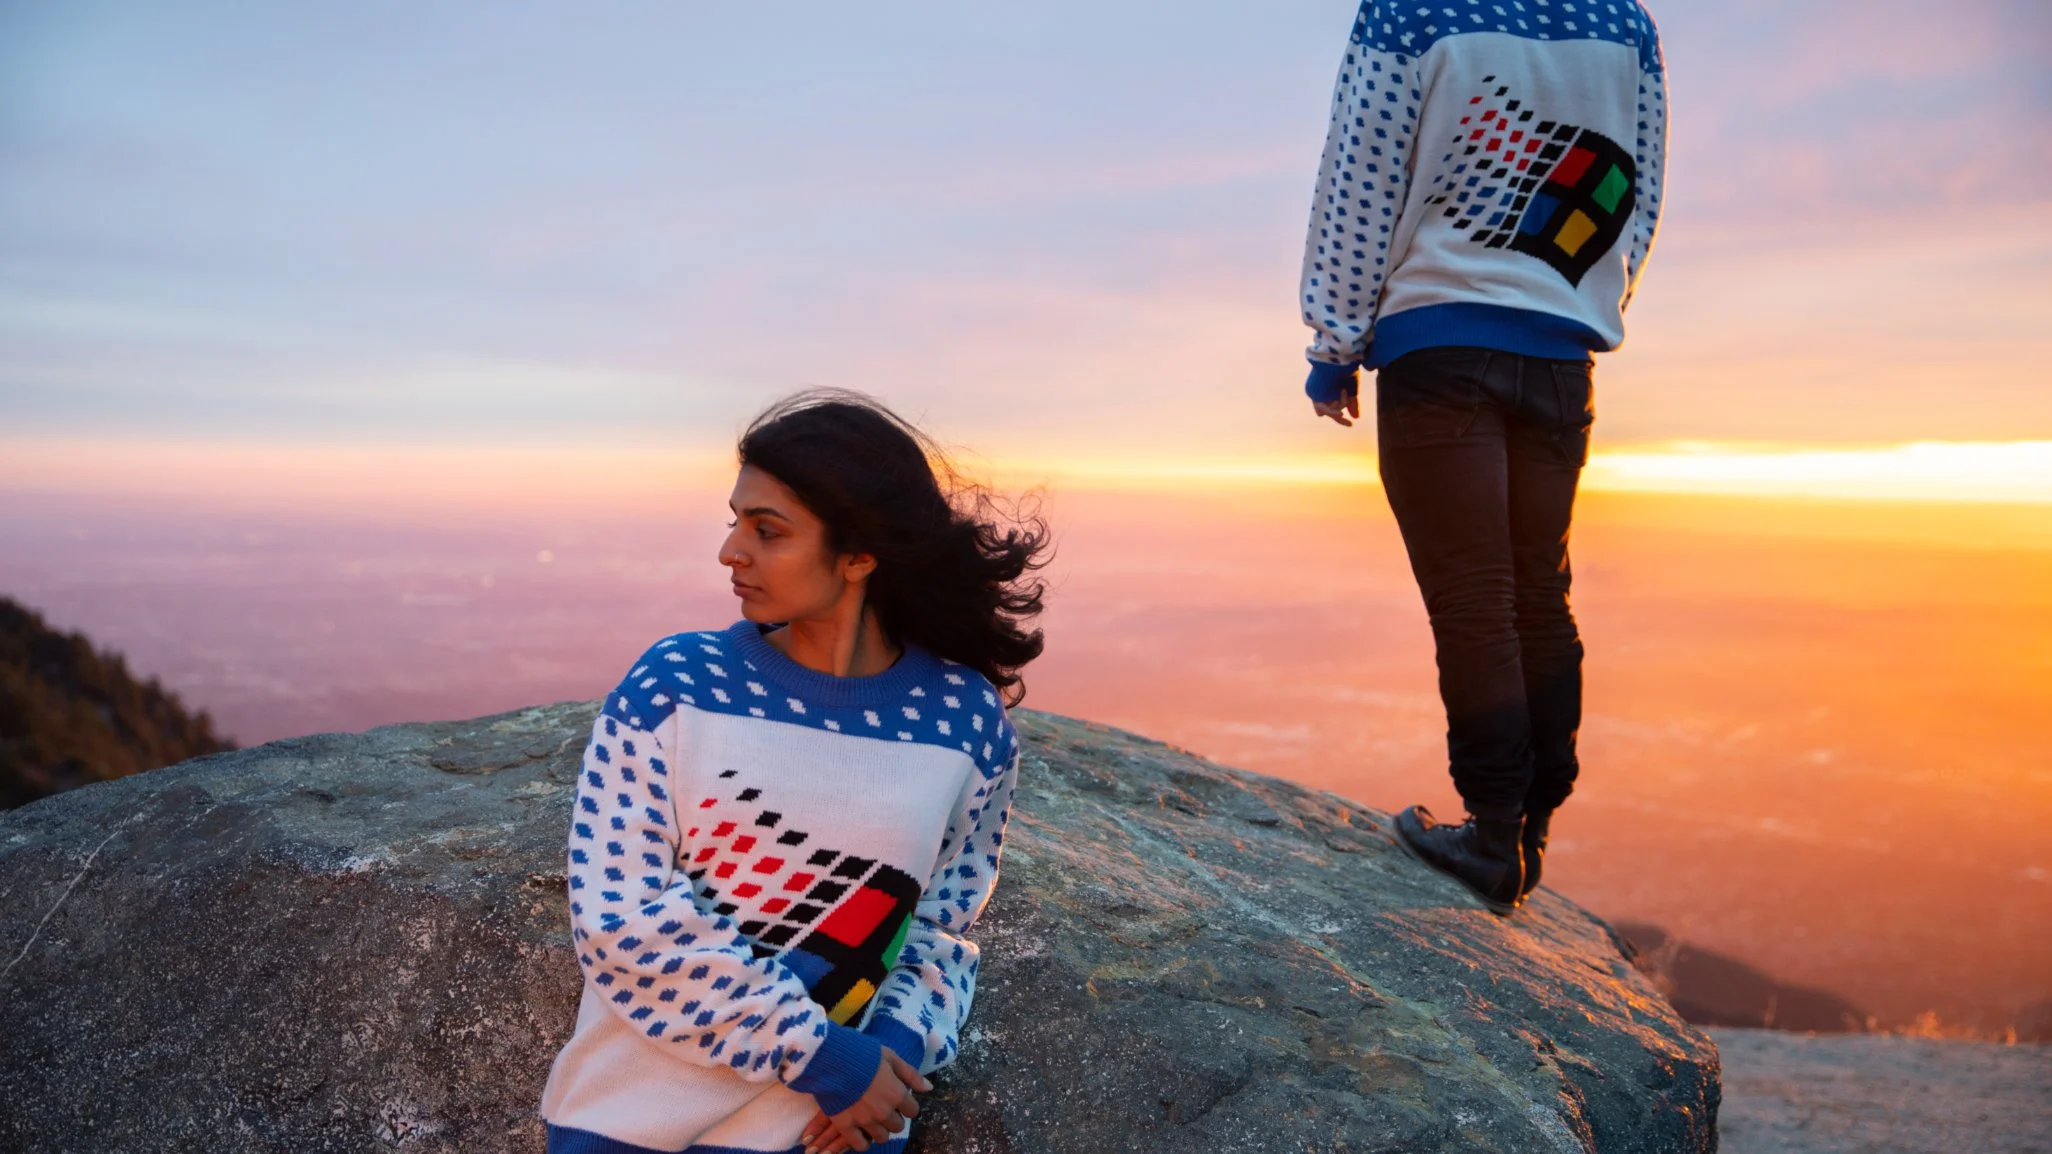 Компания Microsoft представила 'ужасные' рождественские свитера, что вызывают ностальгию - фото 461548